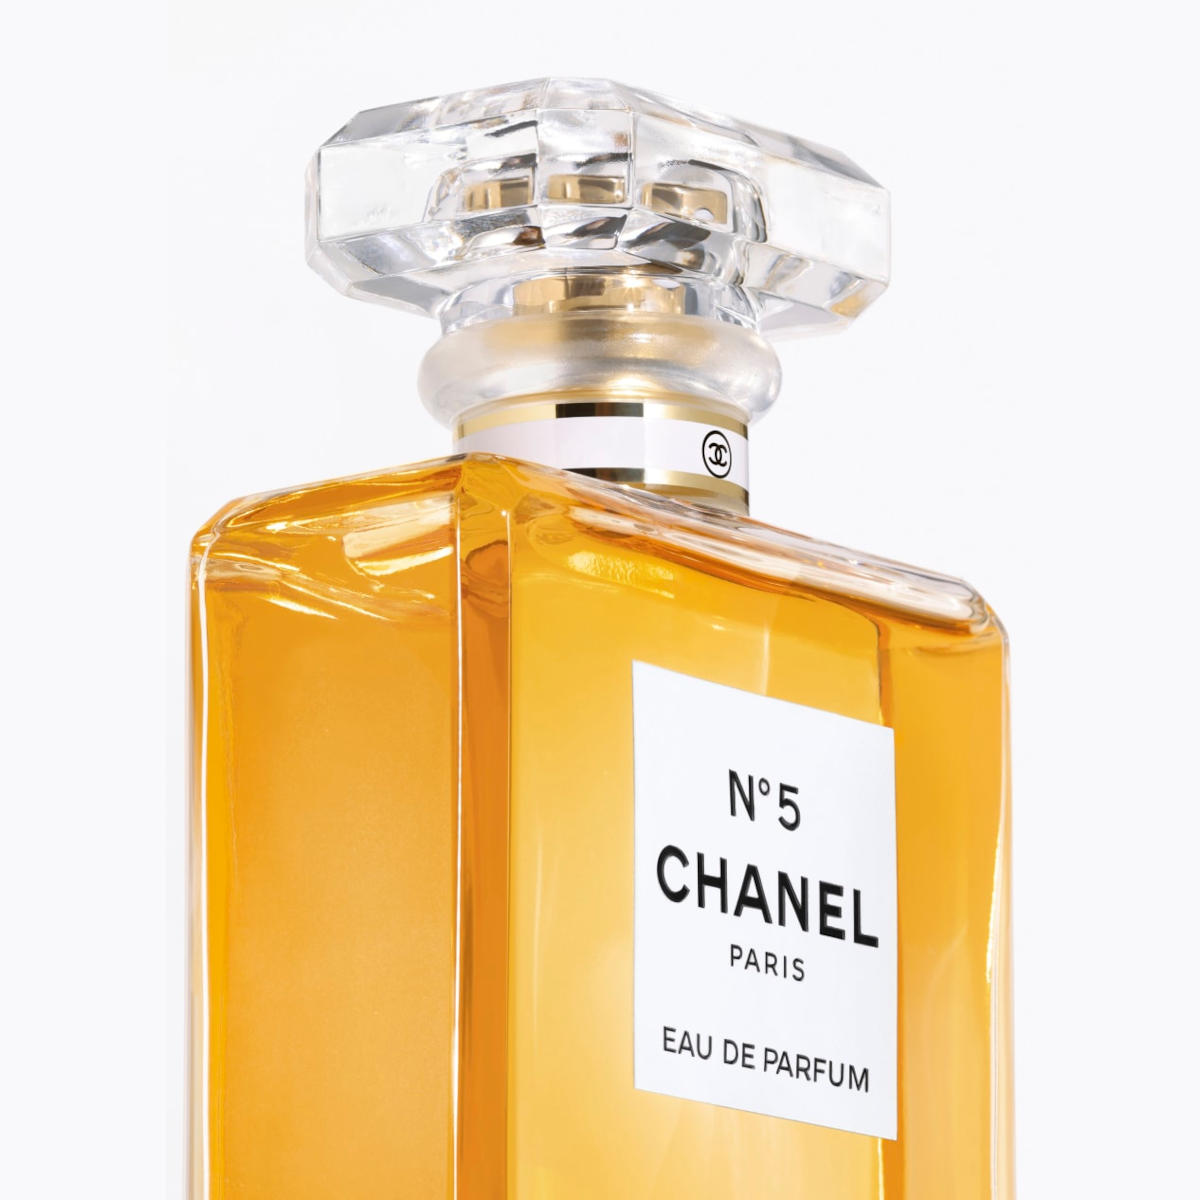 Chanel n. 5, tra i profumi donna migliori